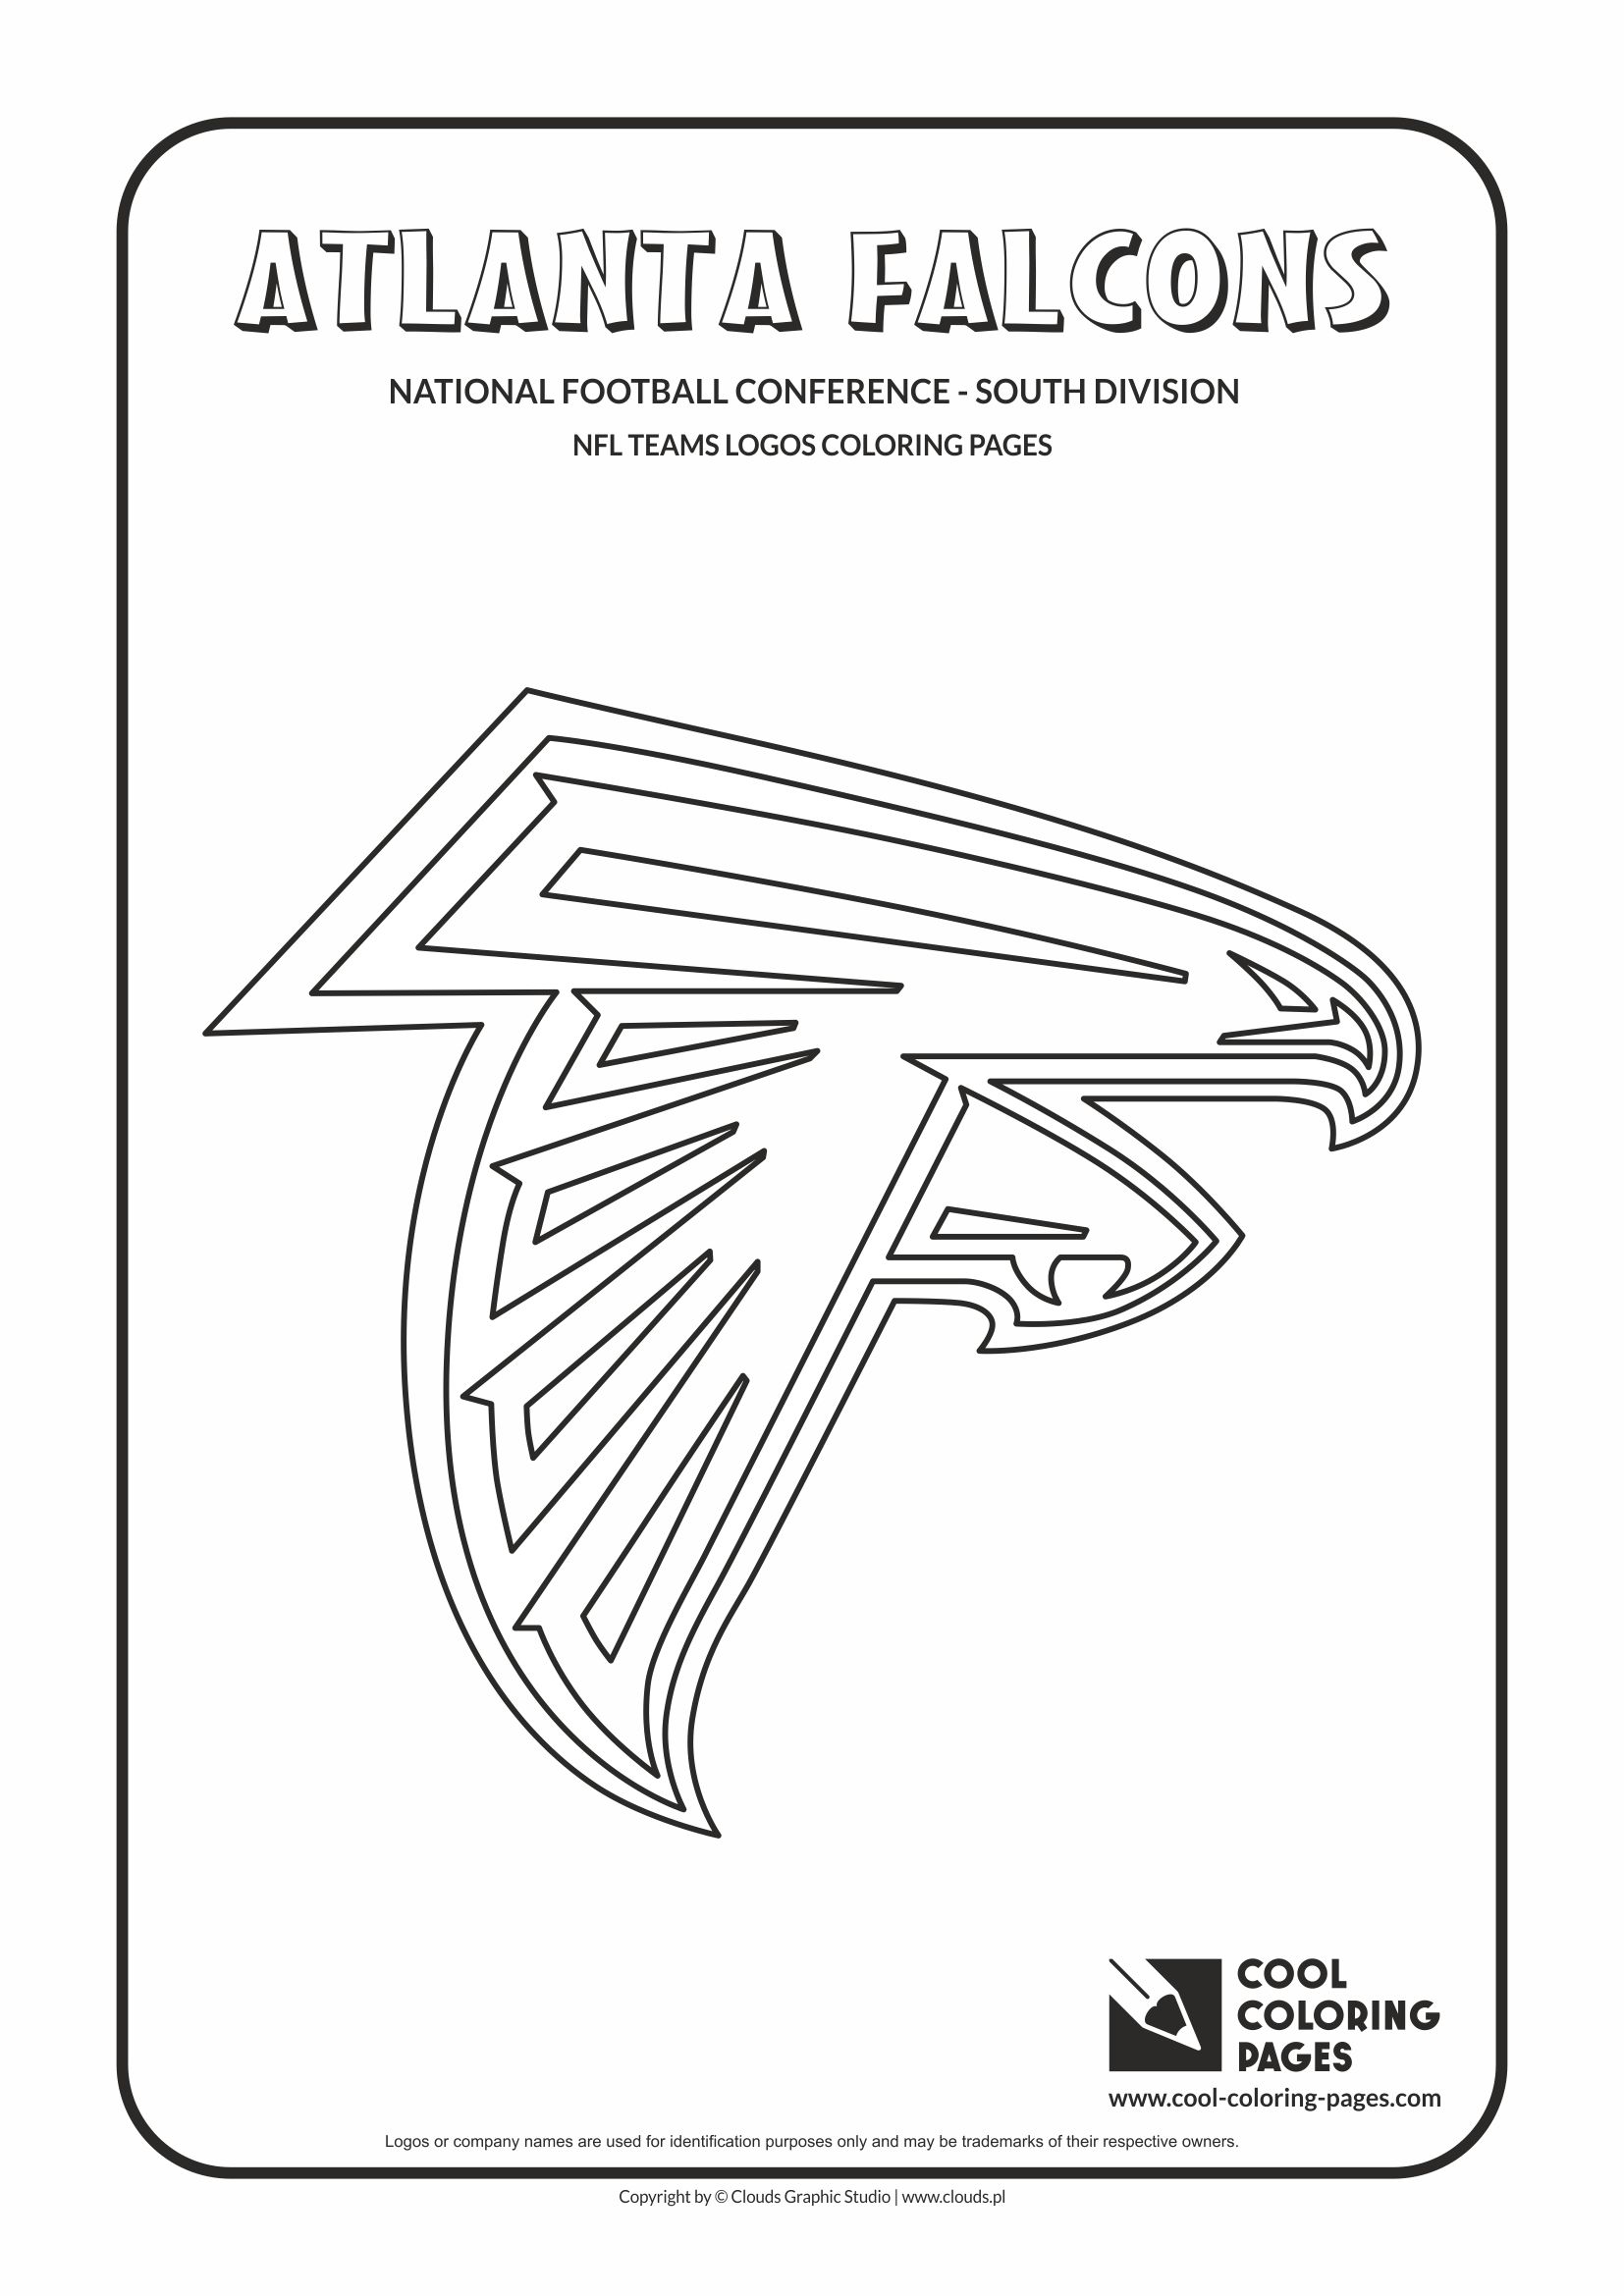 Cool Coloring Pages Atlanta Falcons - NFL American football teams logos